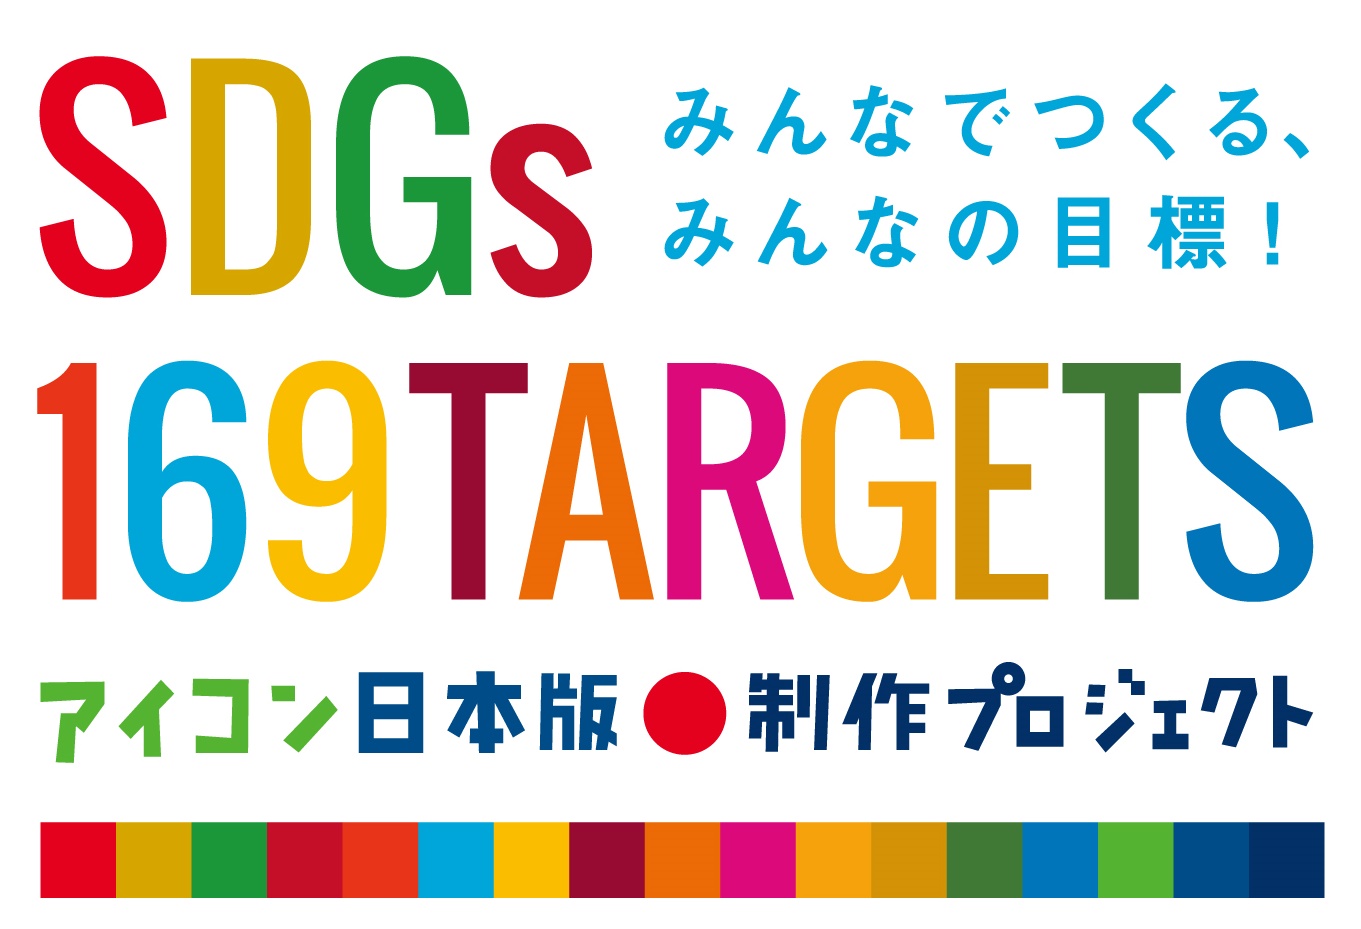 みんなでつくる みんなの目標 Sdgs169ターゲットアイコン 日本版制作プロジェクト 日本語コピーを募集する広告を掲載 株式会社朝日新聞社のプレスリリース